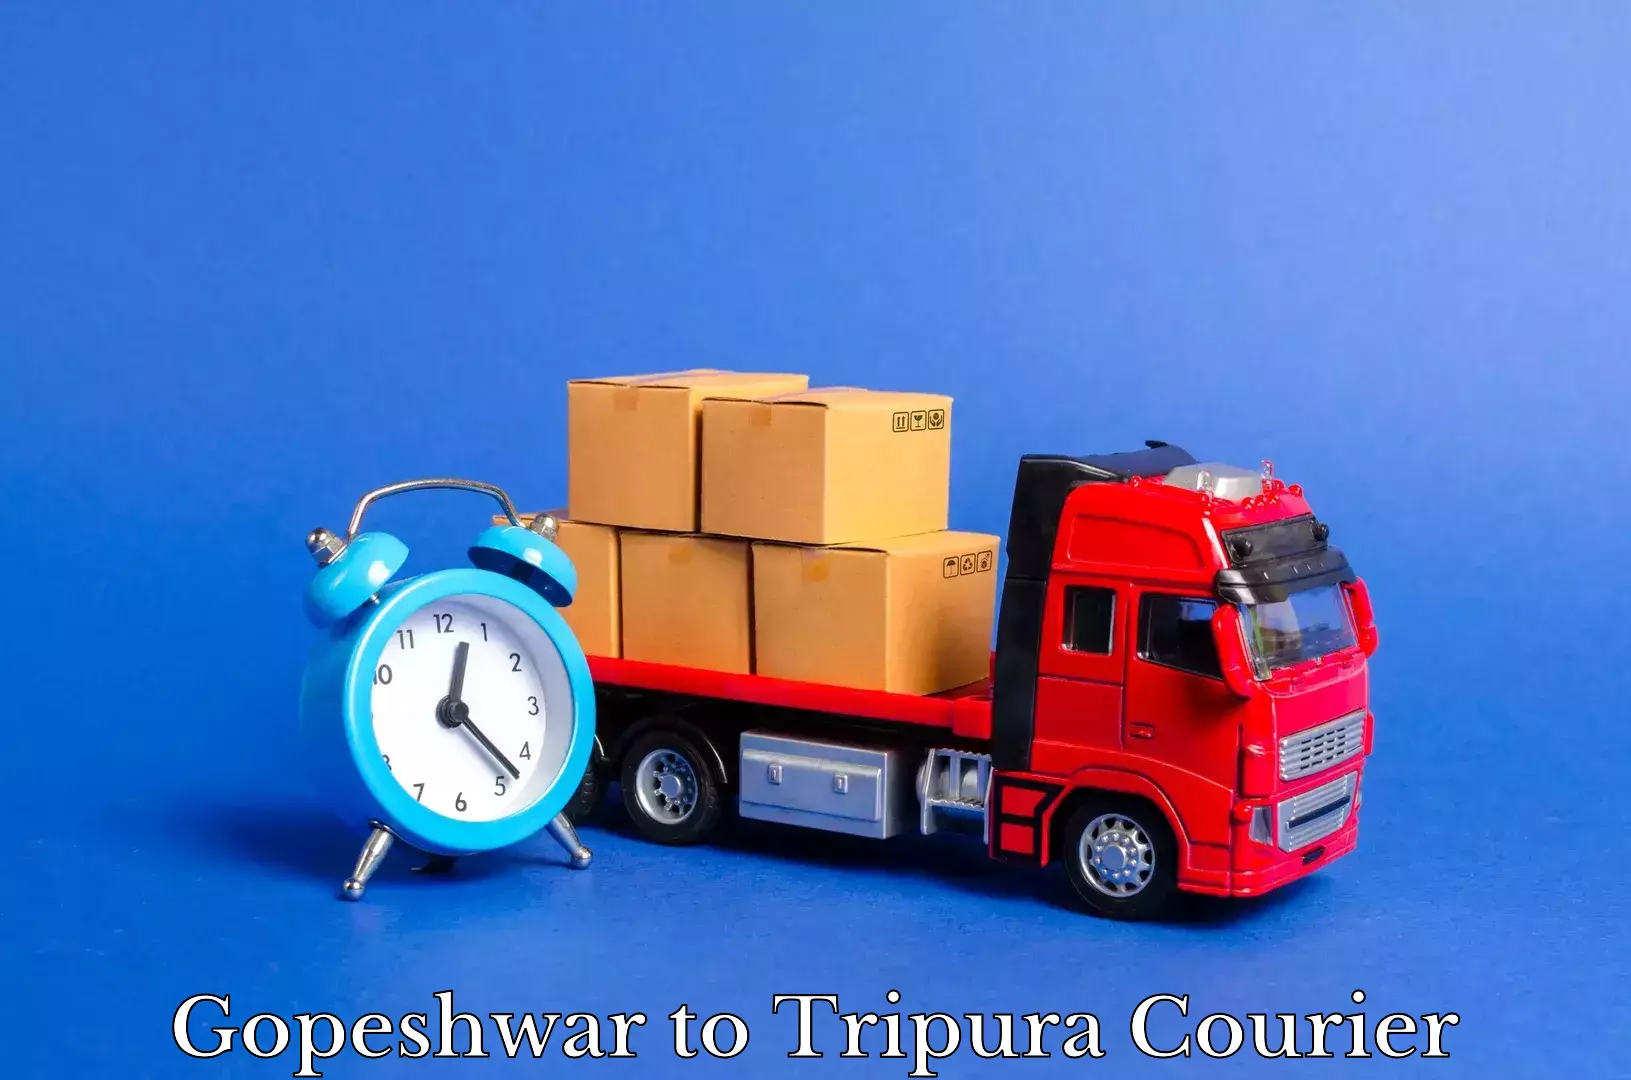 Professional furniture movers Gopeshwar to Bishalgarh